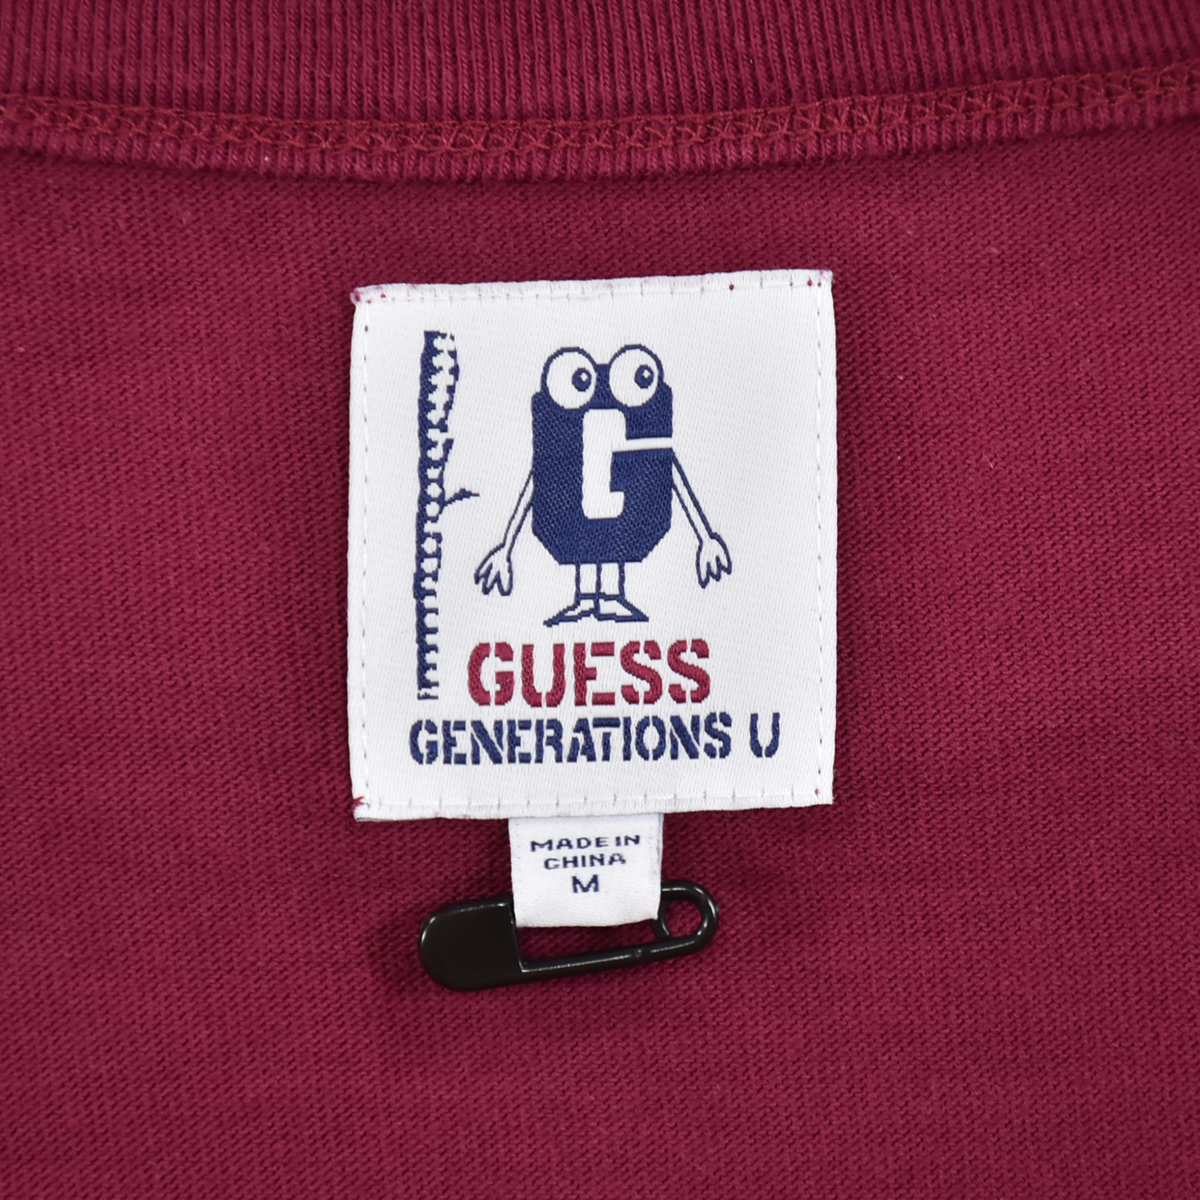  стоимость доставки 300 иен IGUESS x GENERATIONS Guess сотрудничество * Logo принт короткий рукав футболка бордо мужской M